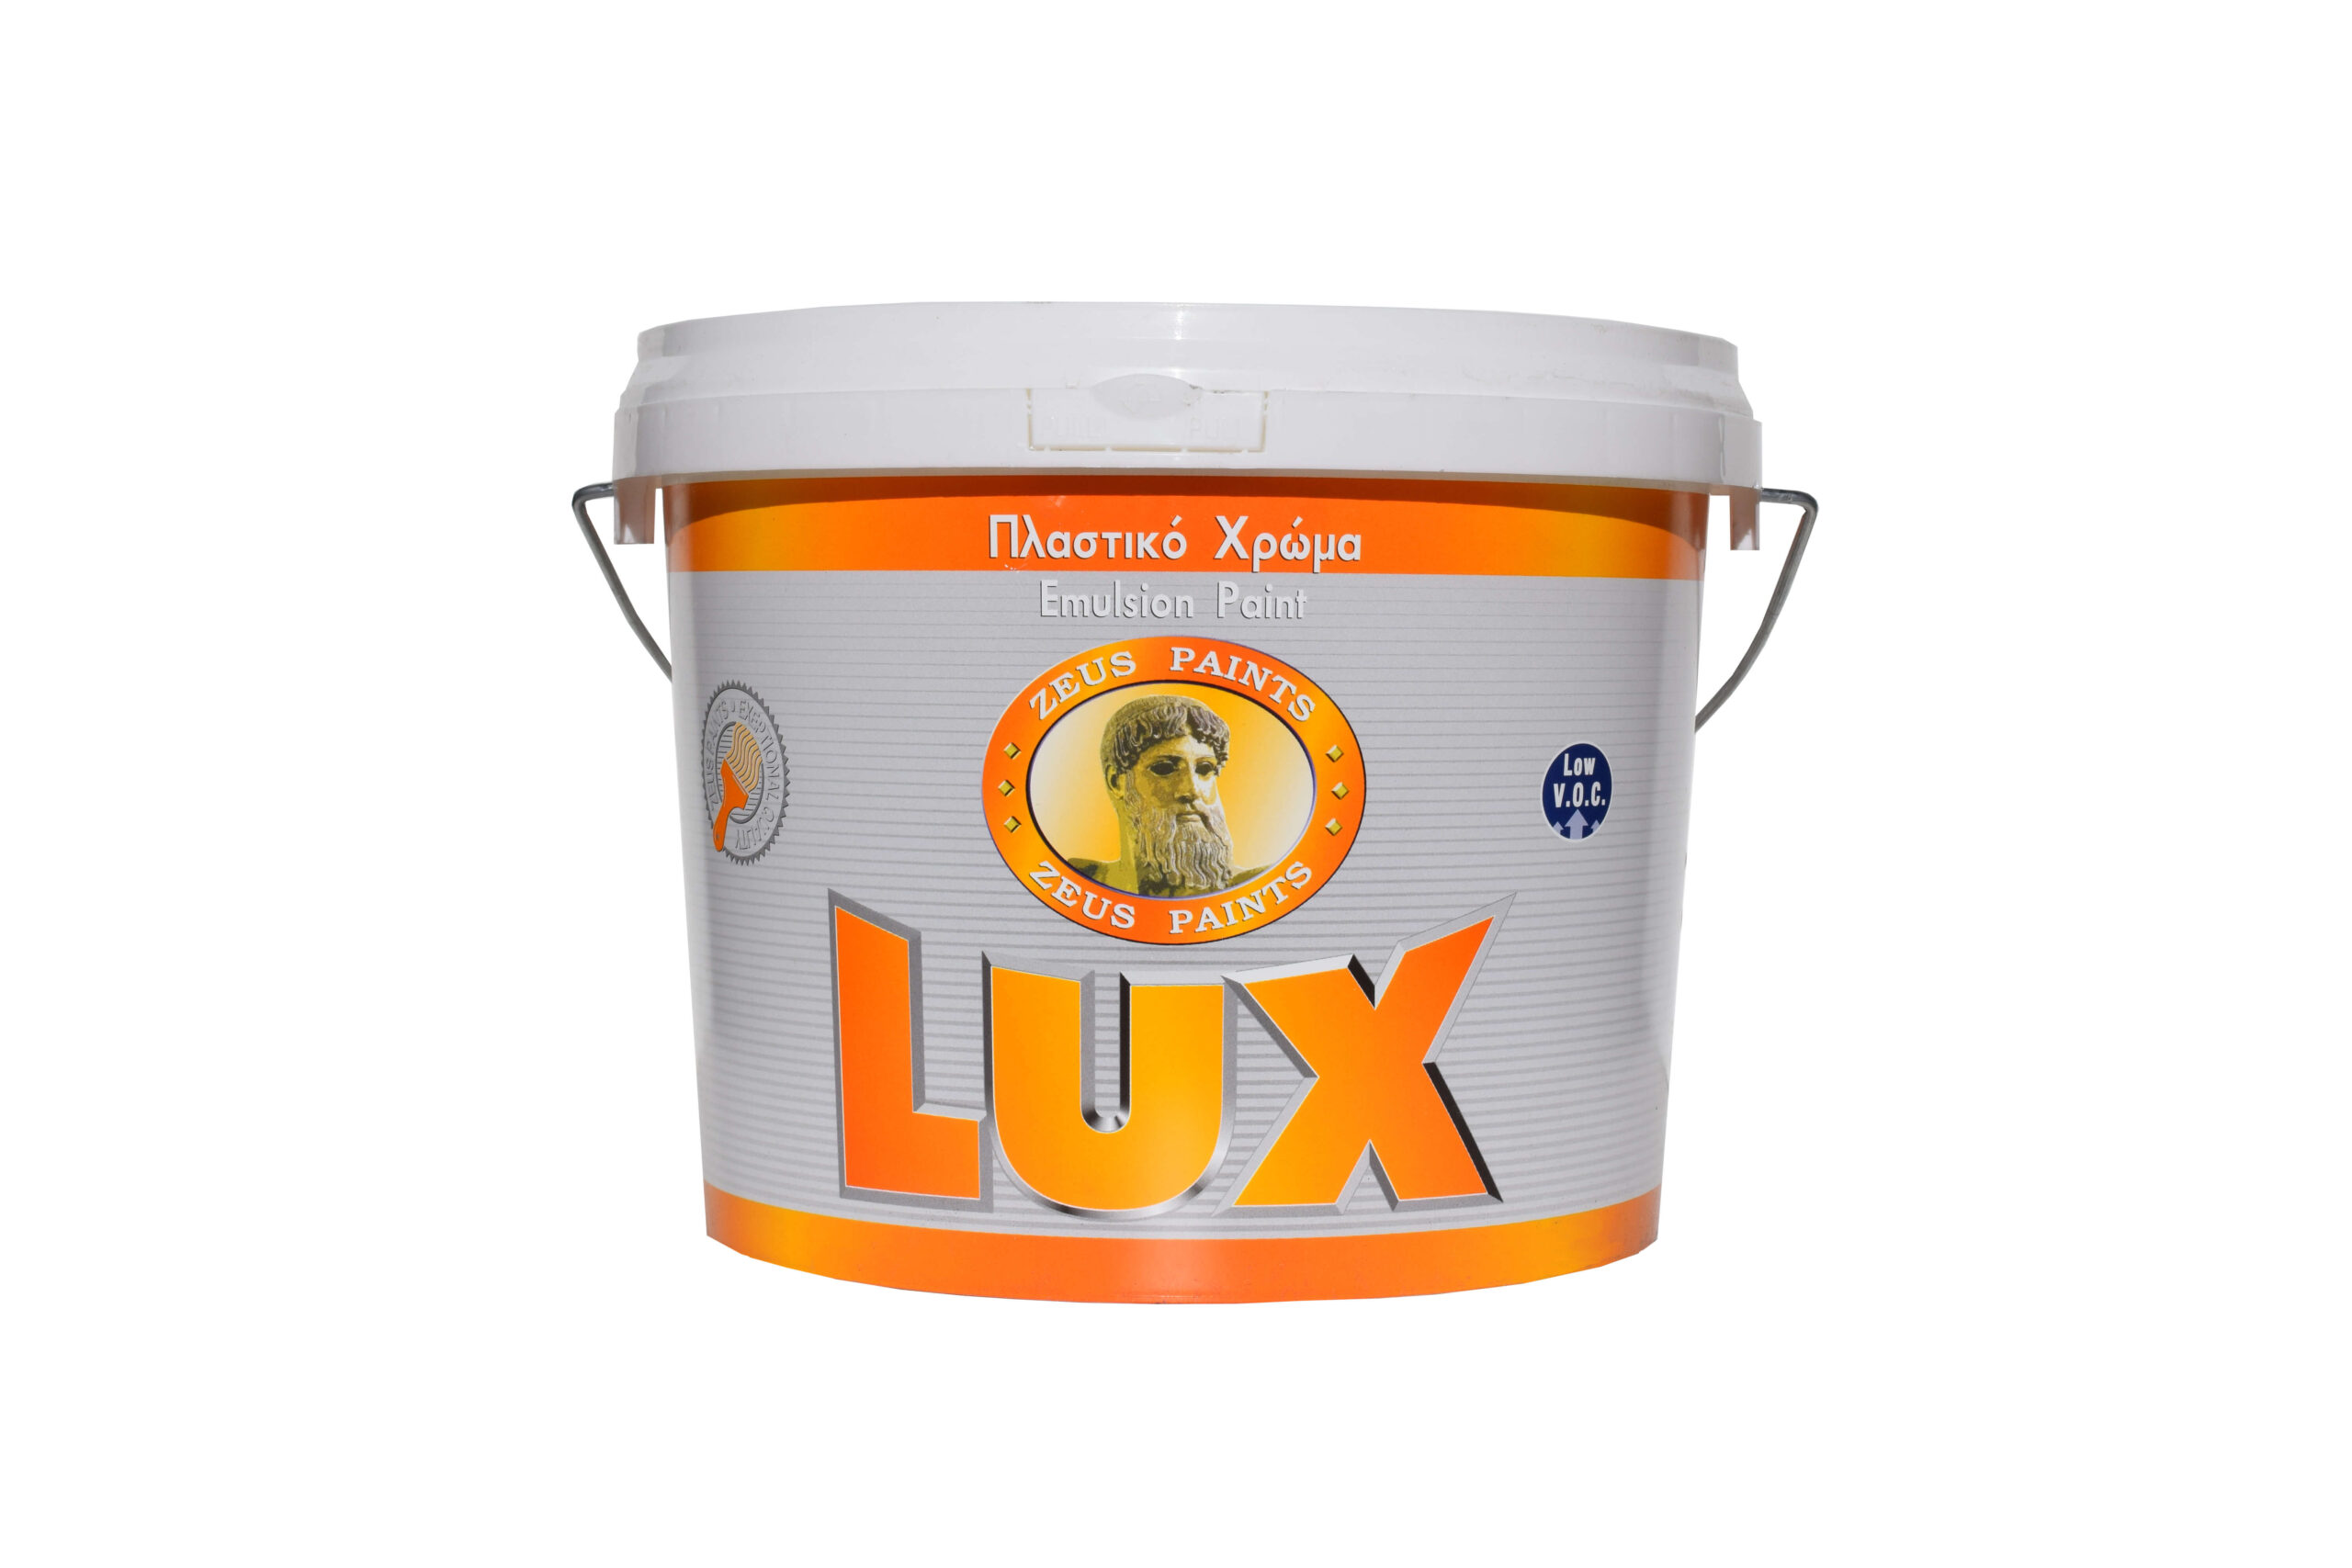 Εικόνα προβολής προϊόντος LUX στον επισκέπτη